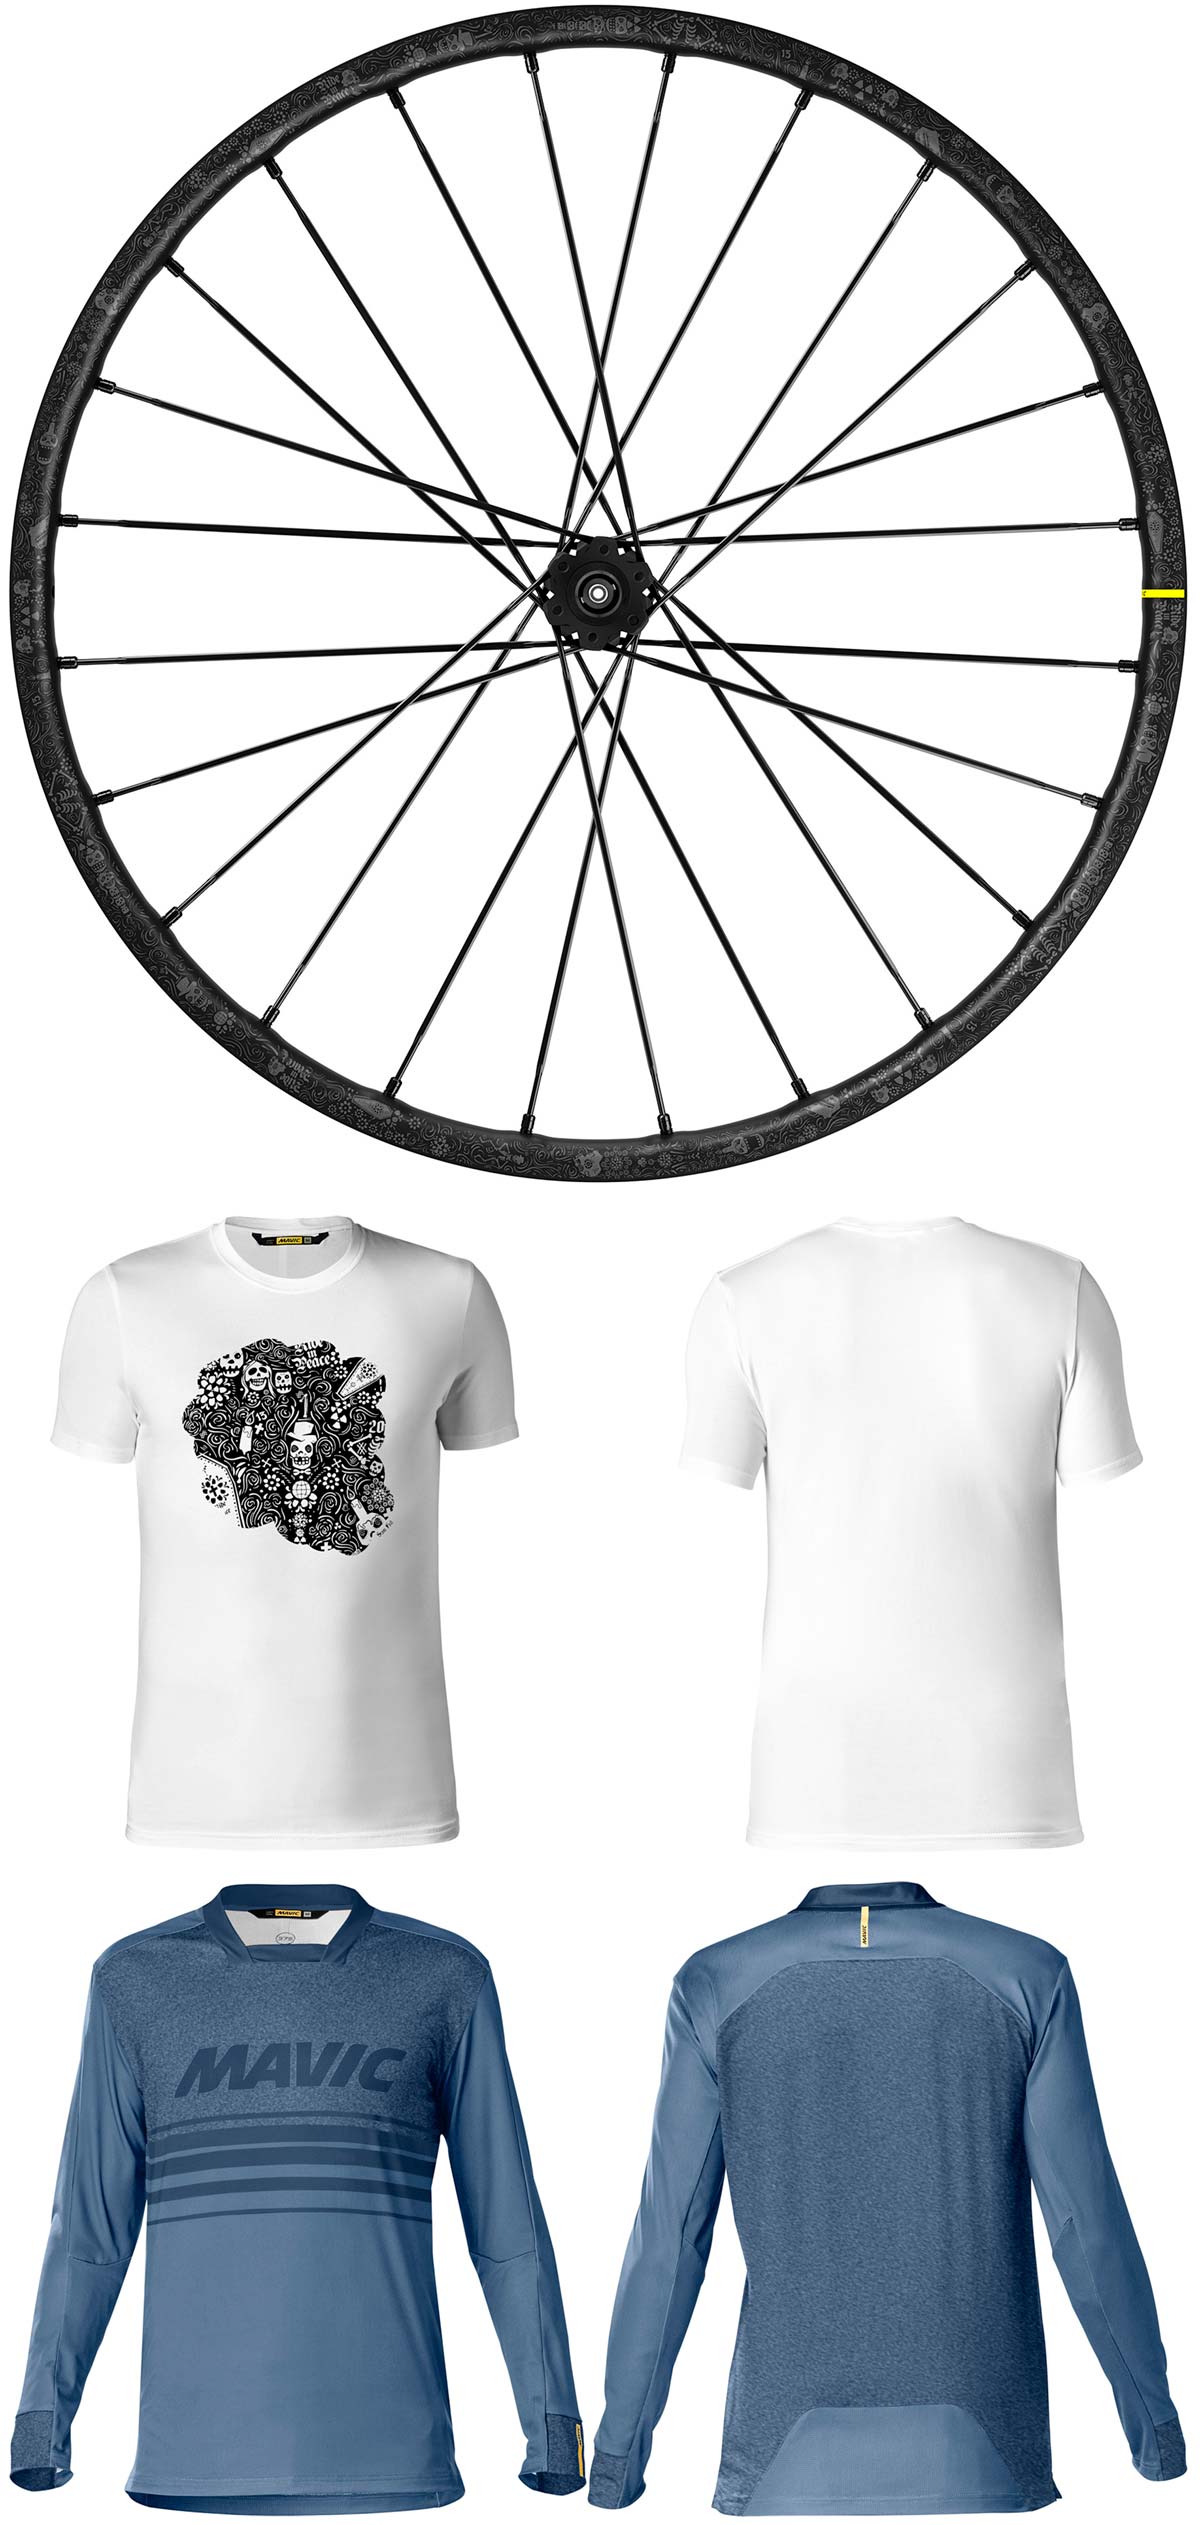 En TodoMountainBike: Mavic se alía con Sam Hill para lanzar una edición limitada de ruedas, maillot y camiseta